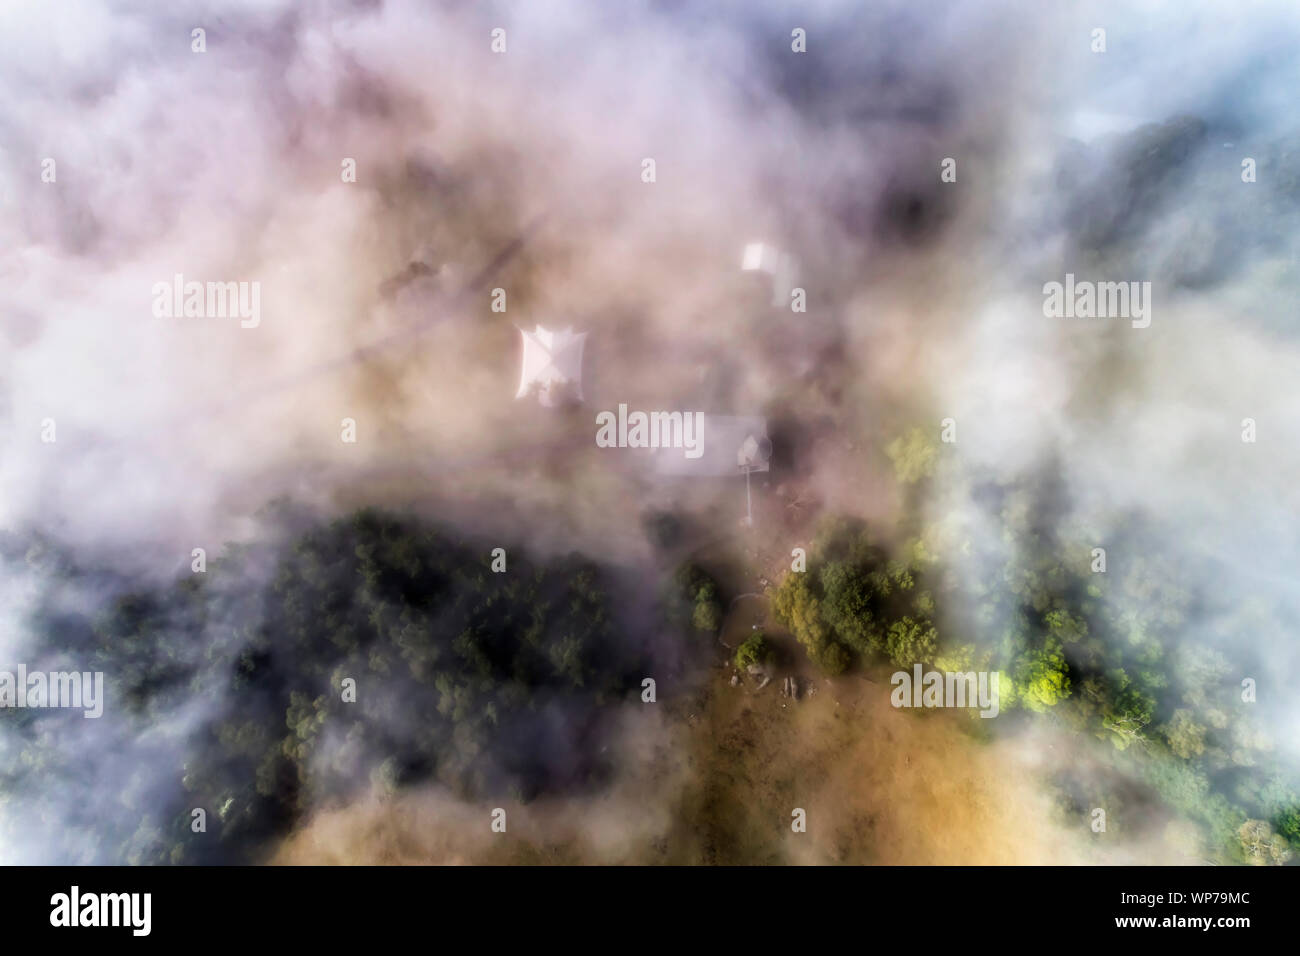 Dichten, weißen Nebel über Remote landwirtschaftlichen Betrieb in Kangaroo Valley von Australien. Luftbild von Oben nach Unten Blick über Gummi - Bäume und Pferdekoppeln um Farm House Stockfoto